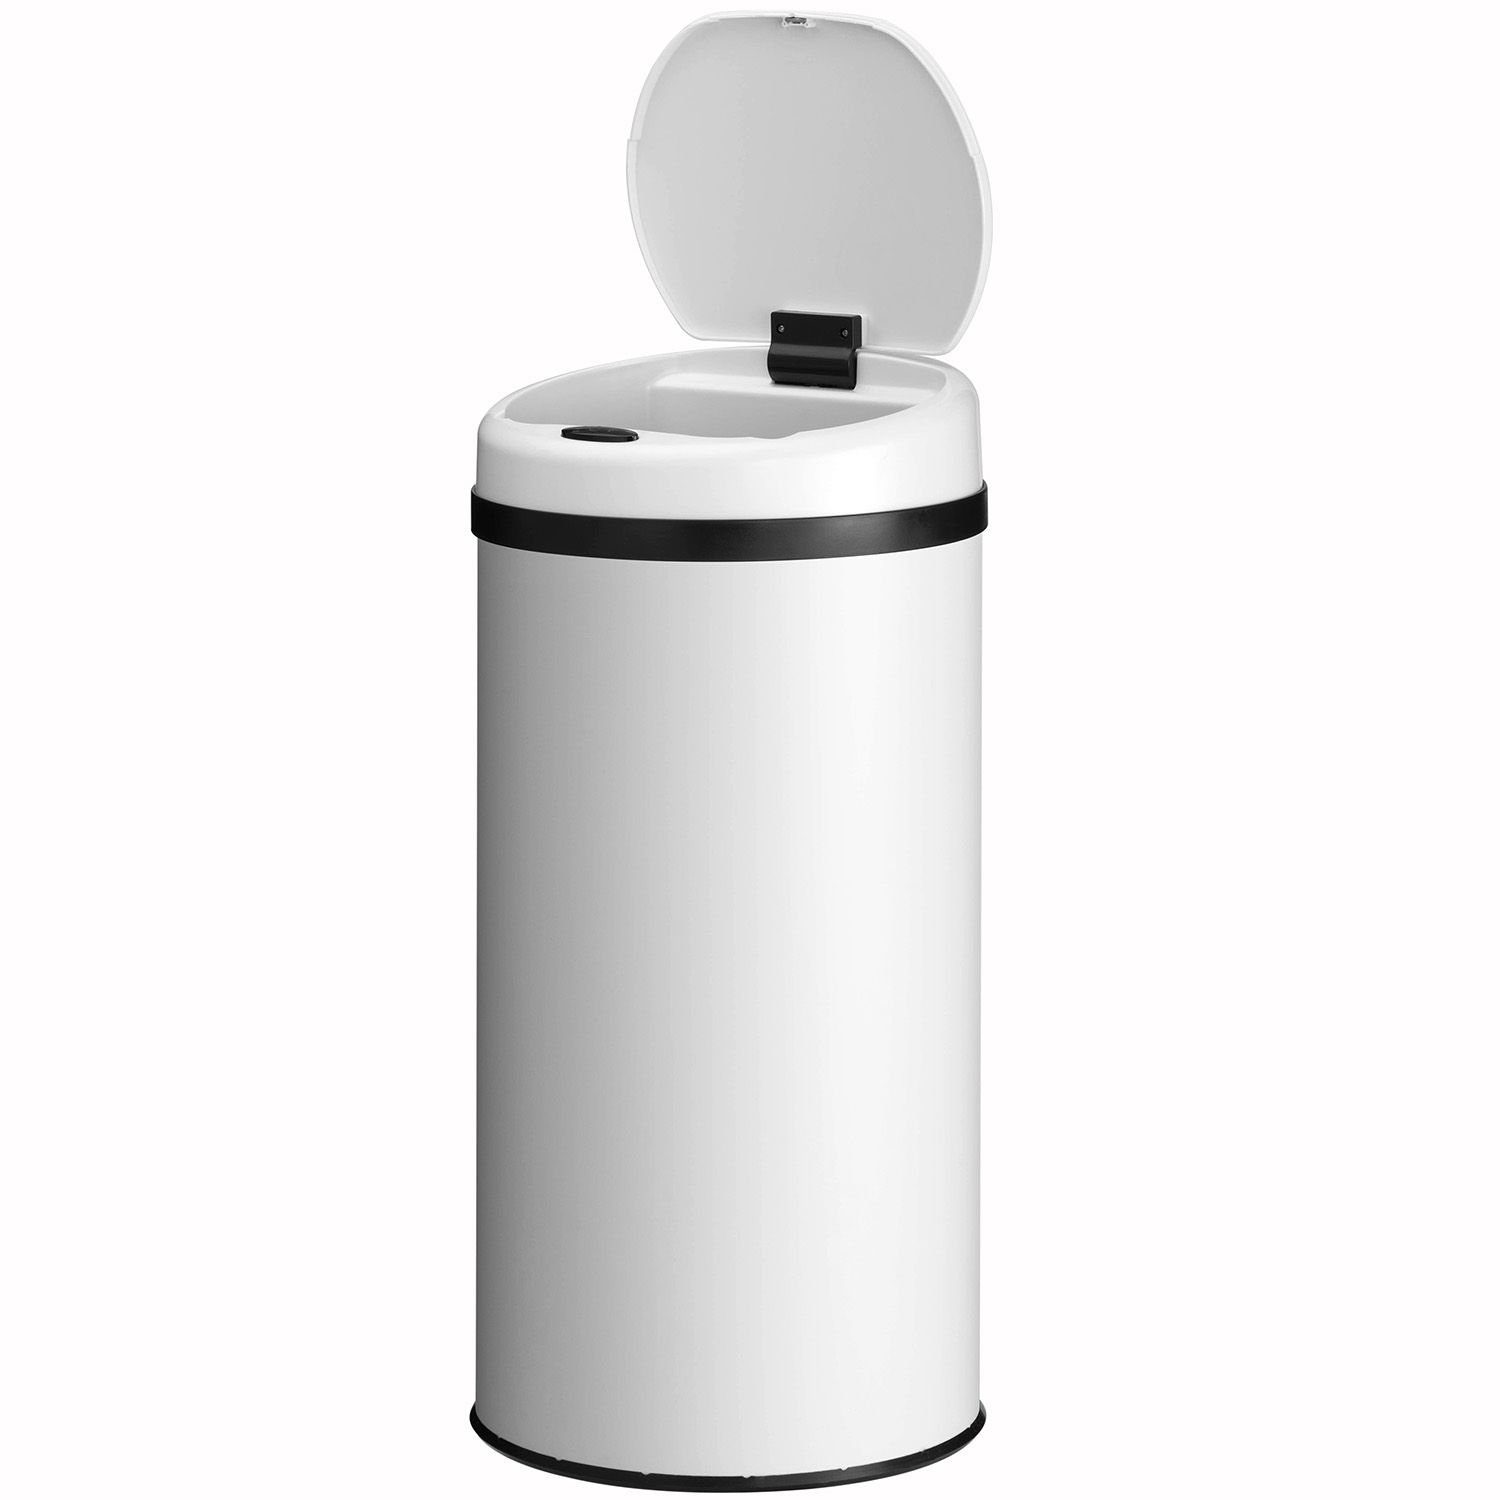 Juskys Mülleimer, 40 L Volumen, mit Sensor, geräuscharmes Öffnen / Schließen, rostfrei Weiß